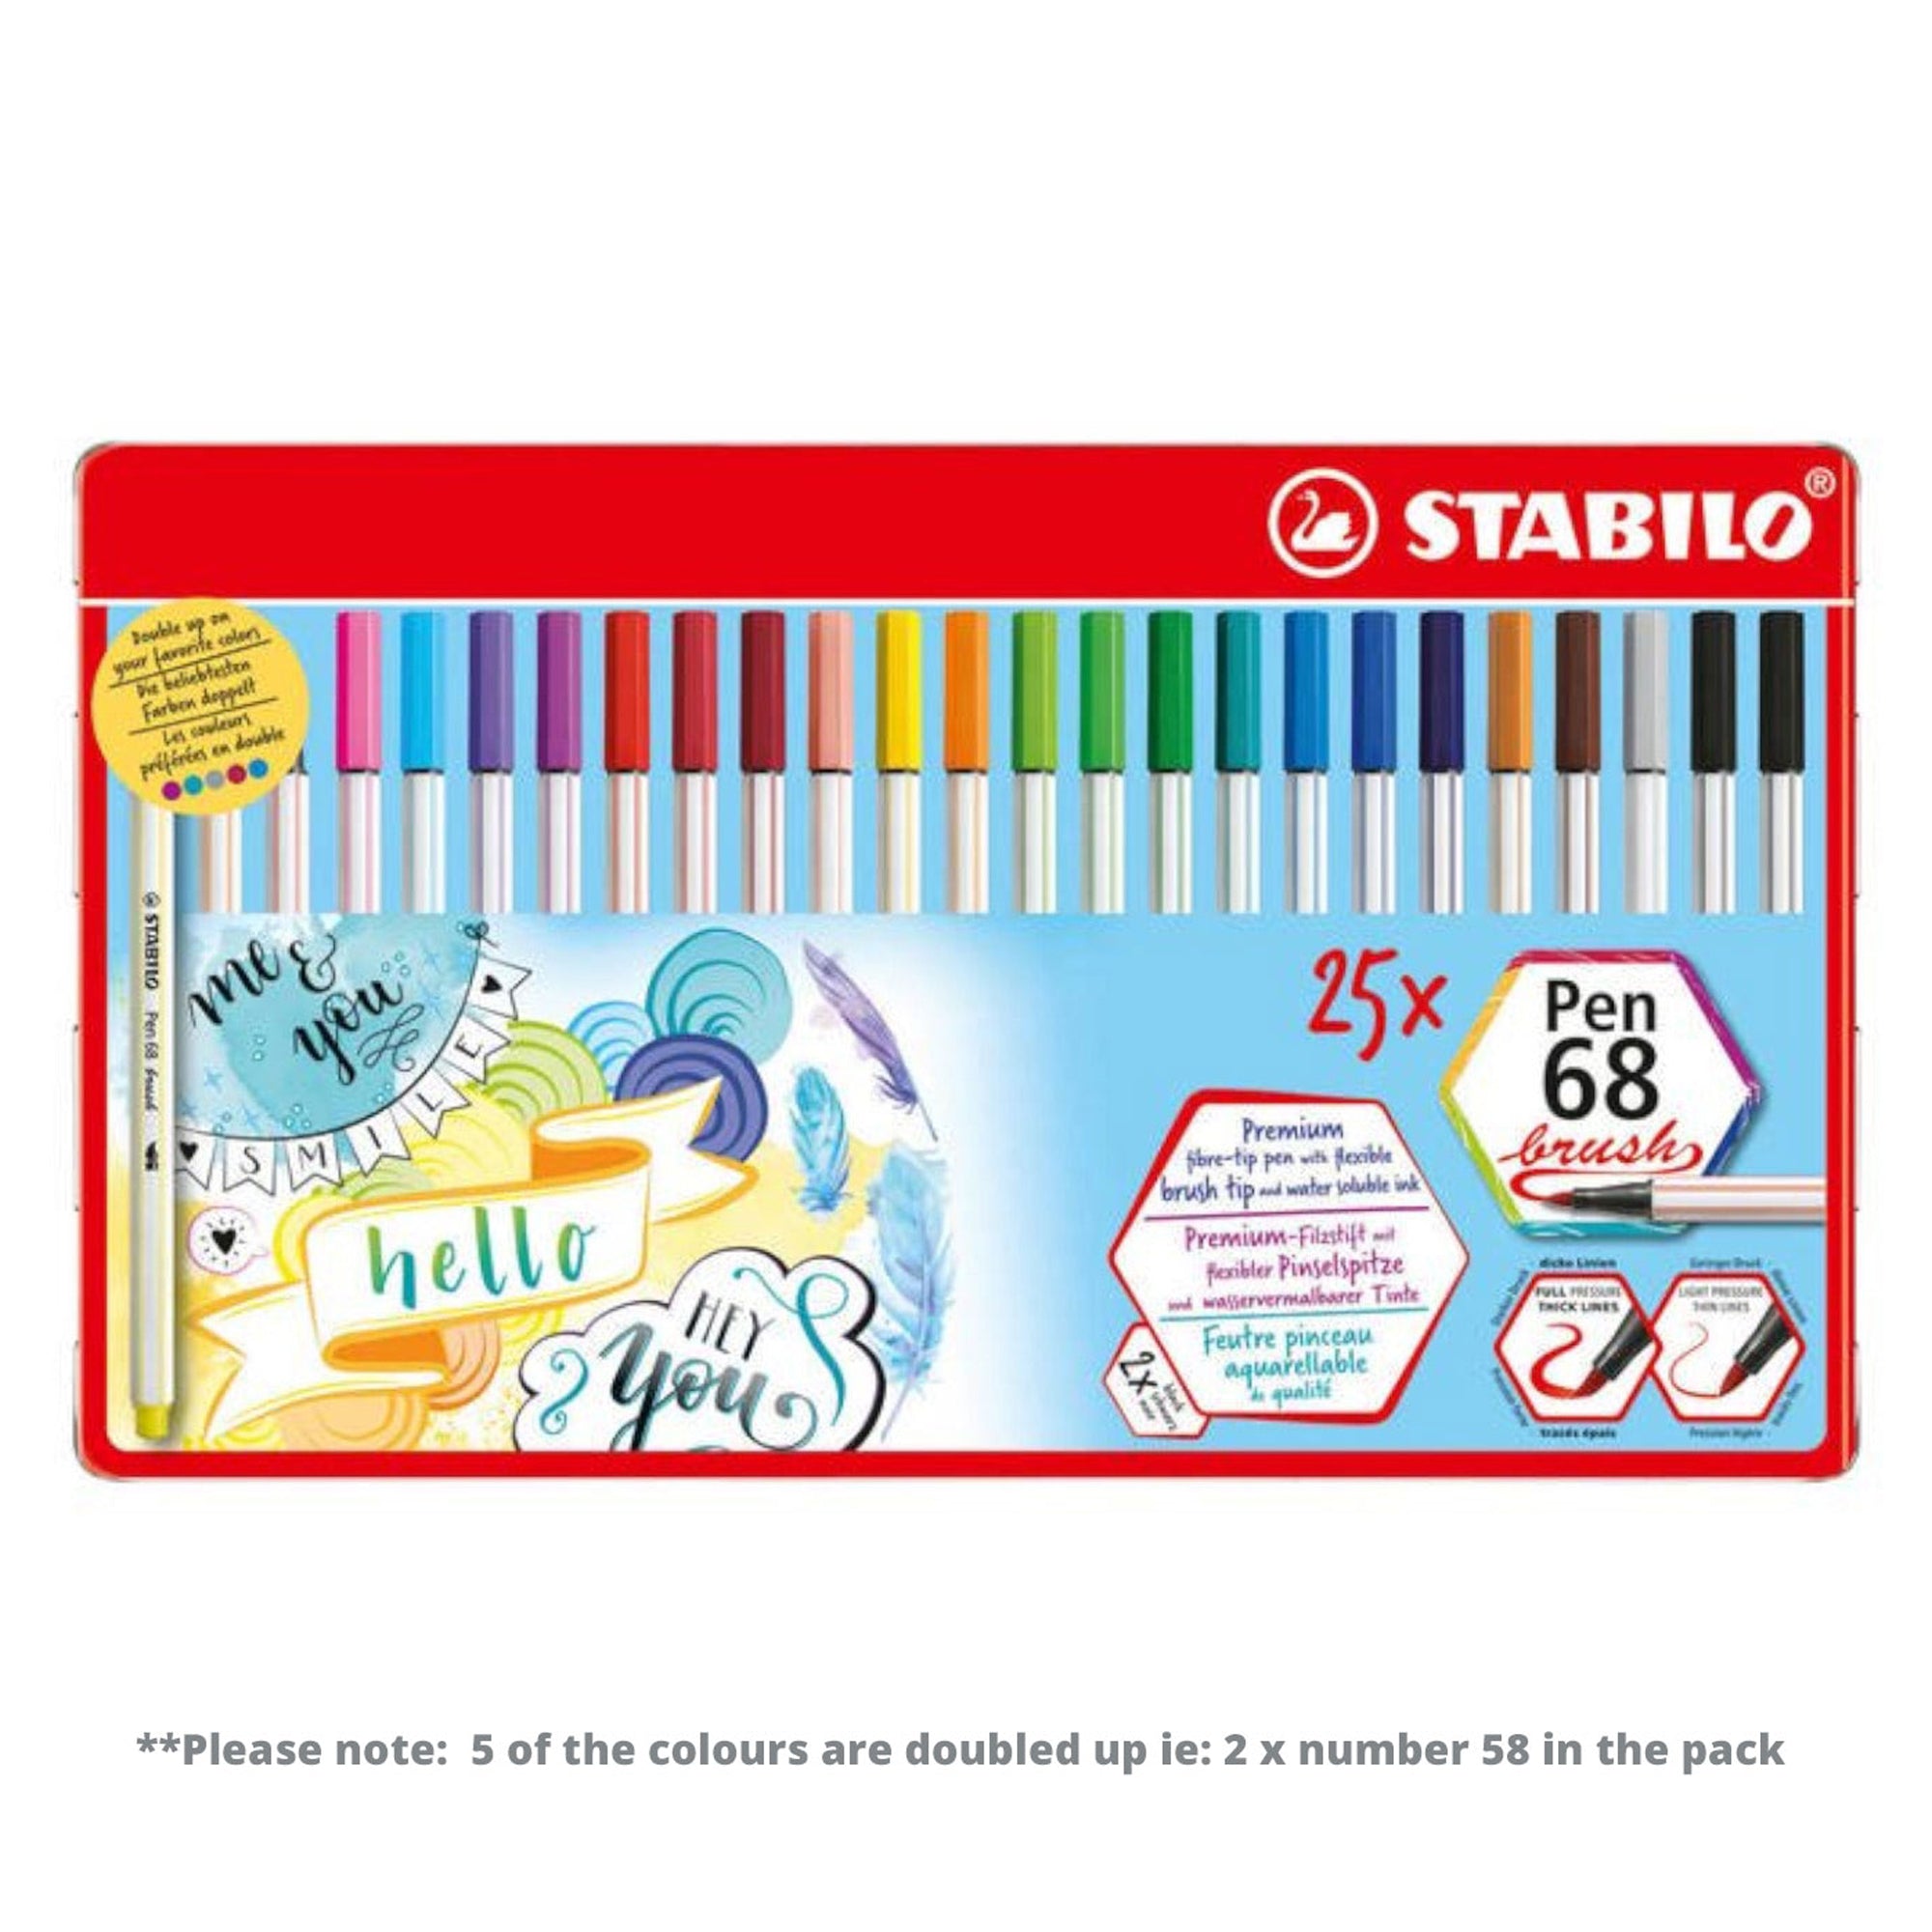 STABILO Premium Fibre-Tip Pen 68 Brush - Tin of 25